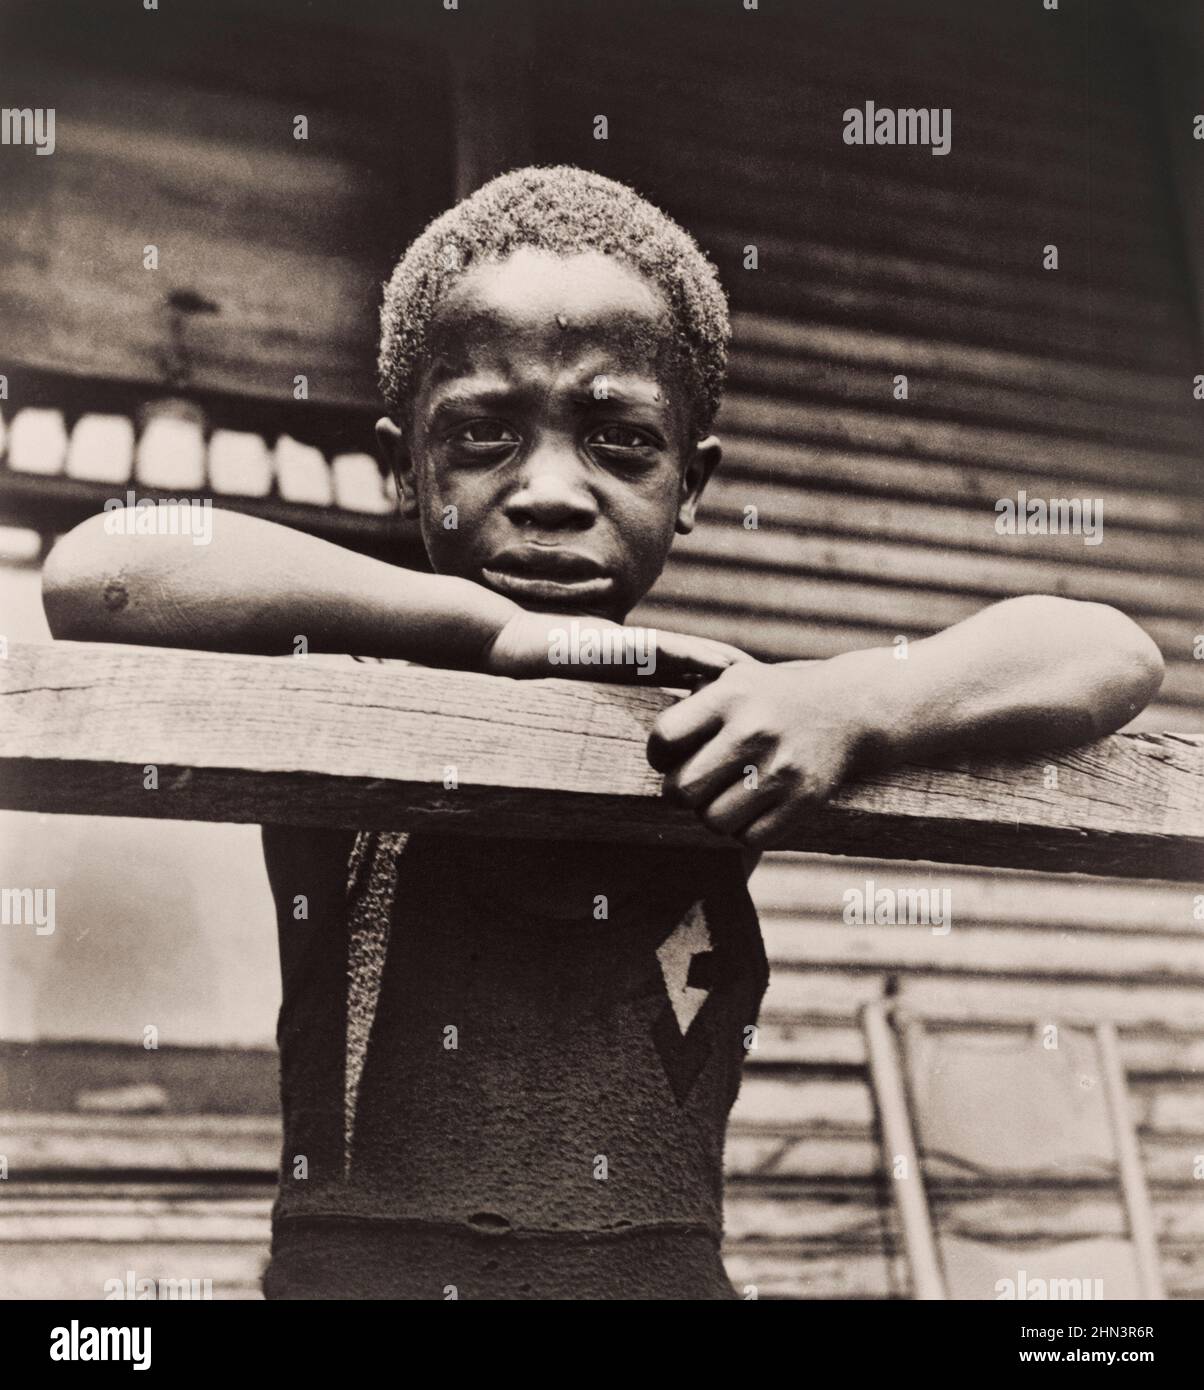 foto d'epoca del figlio dell'acciaieria afro-americana, Pittsburgh, 1935 di Marion Wolcott, 1910-1990, fotografo Foto Stock